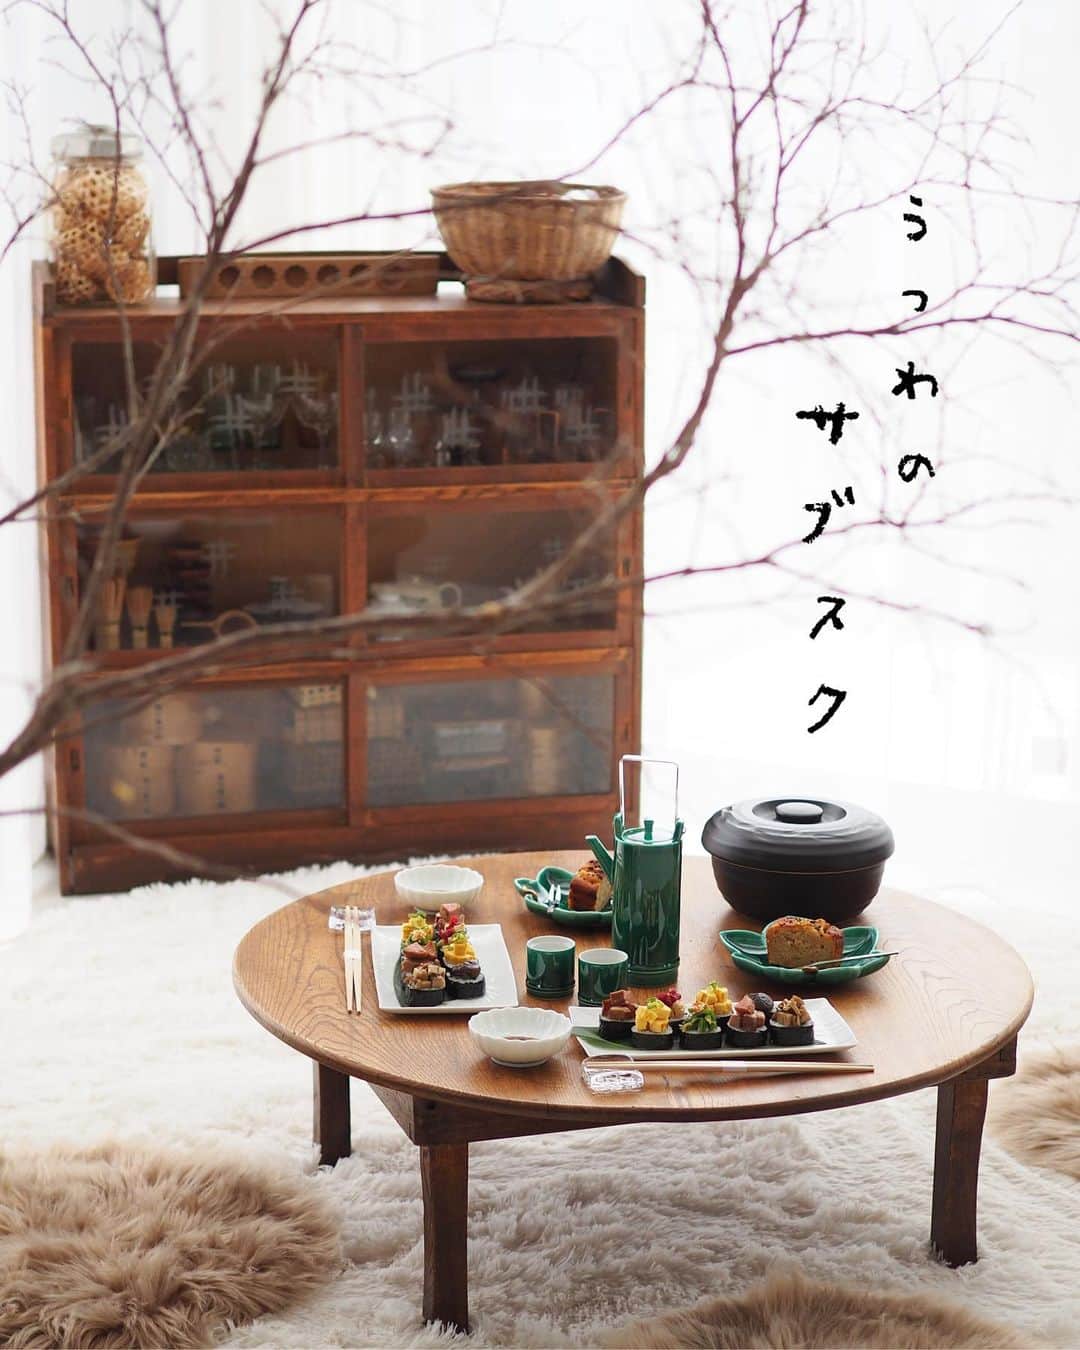 こころのたねのインスタグラム：「⢀⢄ ．．⢄ ⢀𖧧 巻き寿司に、刻んだ作り置きおかずをのせた 少し早めのお夕飯。 ⁡ 𖧷のっけ寿司 （だし巻き玉子・塩タン・椎茸とごぼうの旨煮・梅の山芋短冊・じゃことあみえびのピーマン炒め） 𖧷醤油麹と七味のしっとりケーキ 𖧷日本酒 ⁡ この日はたち吉 @tachikichi_kyoto 様の サブスクうつわ「たけなわセット」に盛り付けて✧ ⁡ ＼たち吉のうつわサブスク／ うつわのサブスクとは、月々定額のお支払いで 既にコーディネートされた各コースのうつわセットを ご家庭でご使用いただけるサービスです。 ⁡ 【うつわのサブスク・こんな方におススメ】 ✔︎手軽にたち吉のうつわを使ってみたい ✔︎食器集めは好きだけど、あまりモノを増やせない ✔︎うつわ選び・コーディネートをお任せしたい ✔︎ちょっと良いうつわを普段使いしてみたい など… ⁡ 万が一、使用中にうつわが割れてしまっても 破損補償（うつわセットにより条件あり）がついてるから 安心してお使いいただけます✨ ⁡ 初回は特別価格の 550円（全コース一律/税込）でご利用可能✧ おふきんも1枚プレゼント♪ この機会にぜひ☺️ ⁡ サブスクの詳細とお申し込みは、 たち吉様のサブスクページへ。 ▶︎ https://subsc.tachikichi.jp/ ストーリー、またはハイライトの𓉿マークからも 飛べるのでチェックしてみてくださいね。 @kokoronotane ⁡ 醤油麹と七味のしっとりケーキレシピも のちに掲載される予定ですのでそちらも併せてどうぞ♪ @tachikichi_kyoto ⁡ ⁡ たち吉×こころのたね。 タイアップ投稿中✨ ．．⢄ ．．⢄ ⢀⢄ ．⢀𖧧」